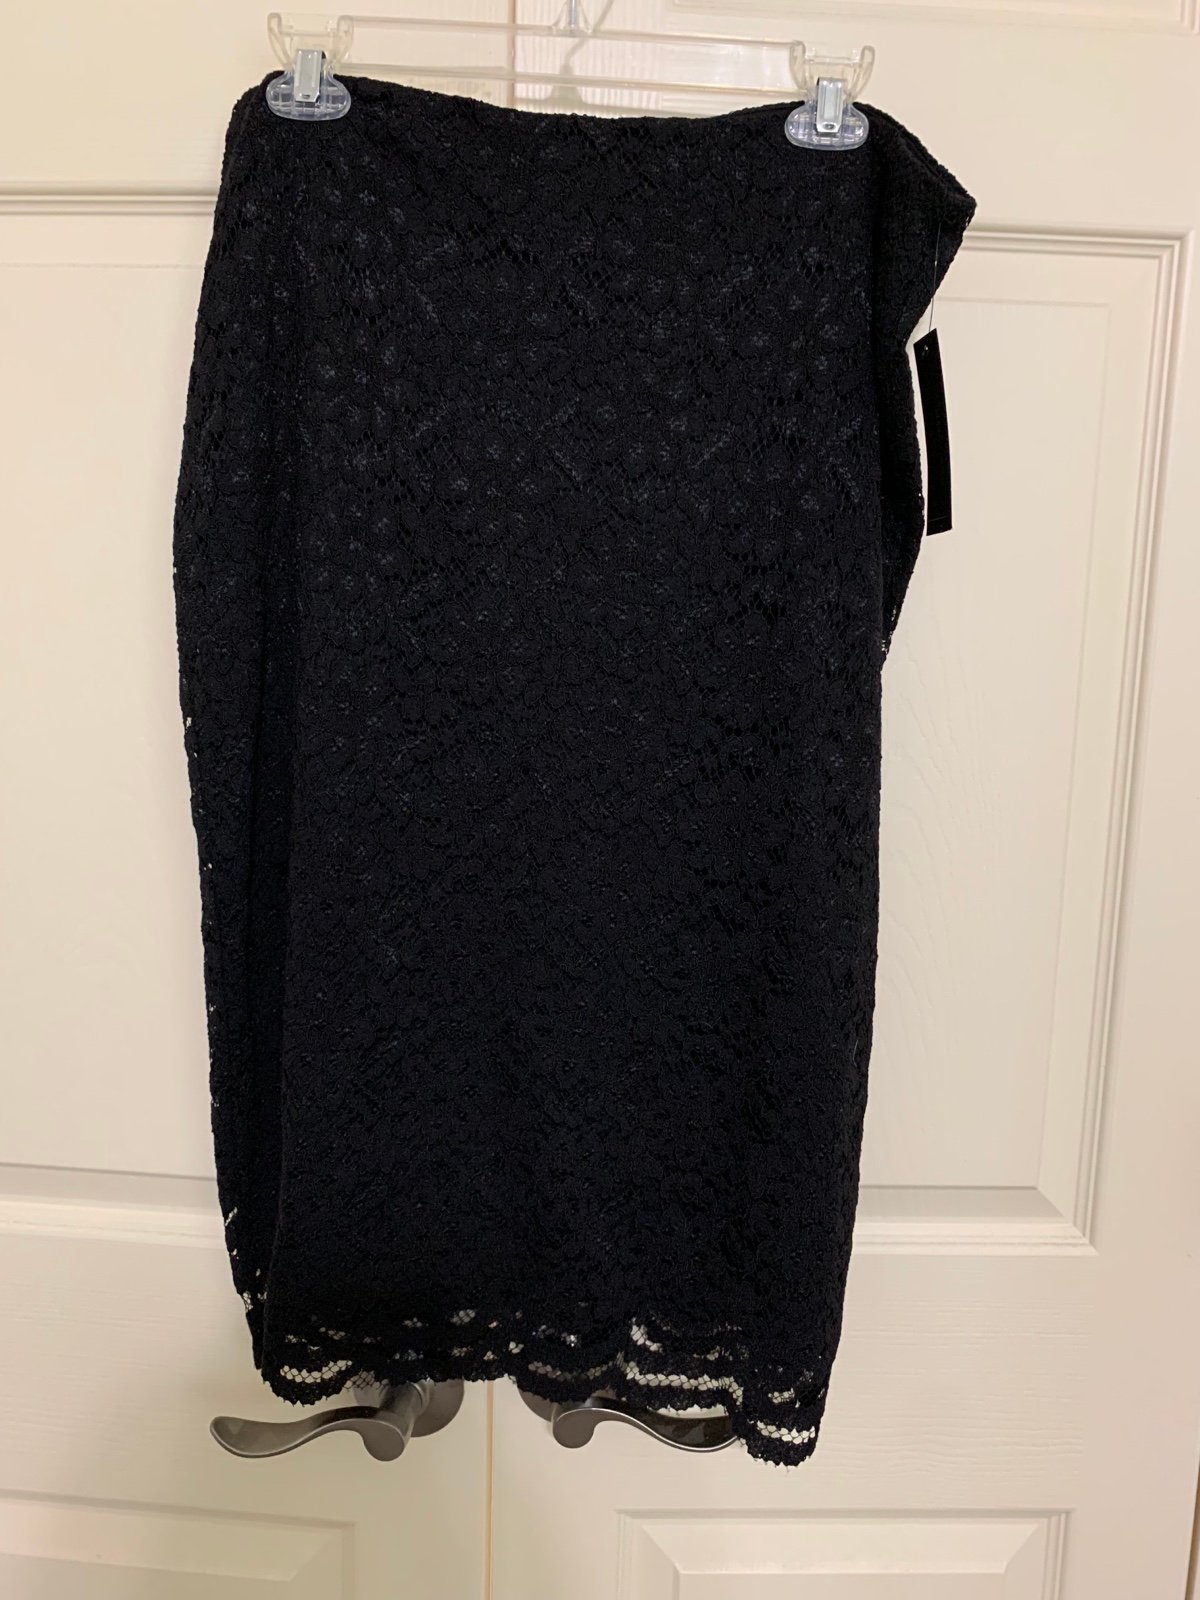 Latest  NWT Worthington black lace overlay skirt size 1